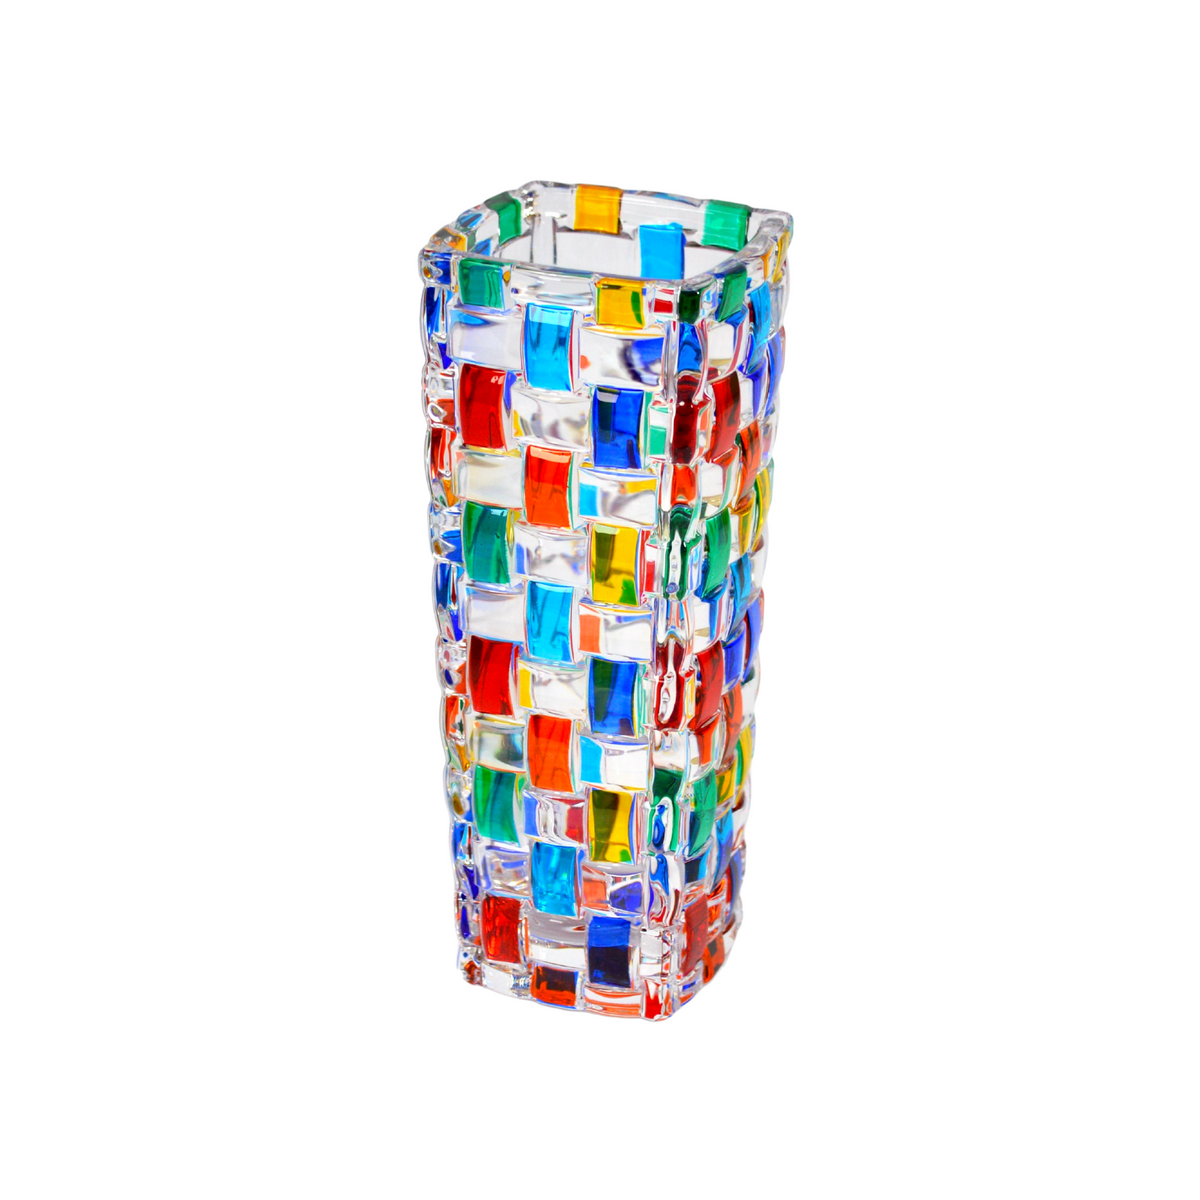 Bossanova Bud Vase, Hand Painted Italian Crystal, Made in Italy - My Italian Decor